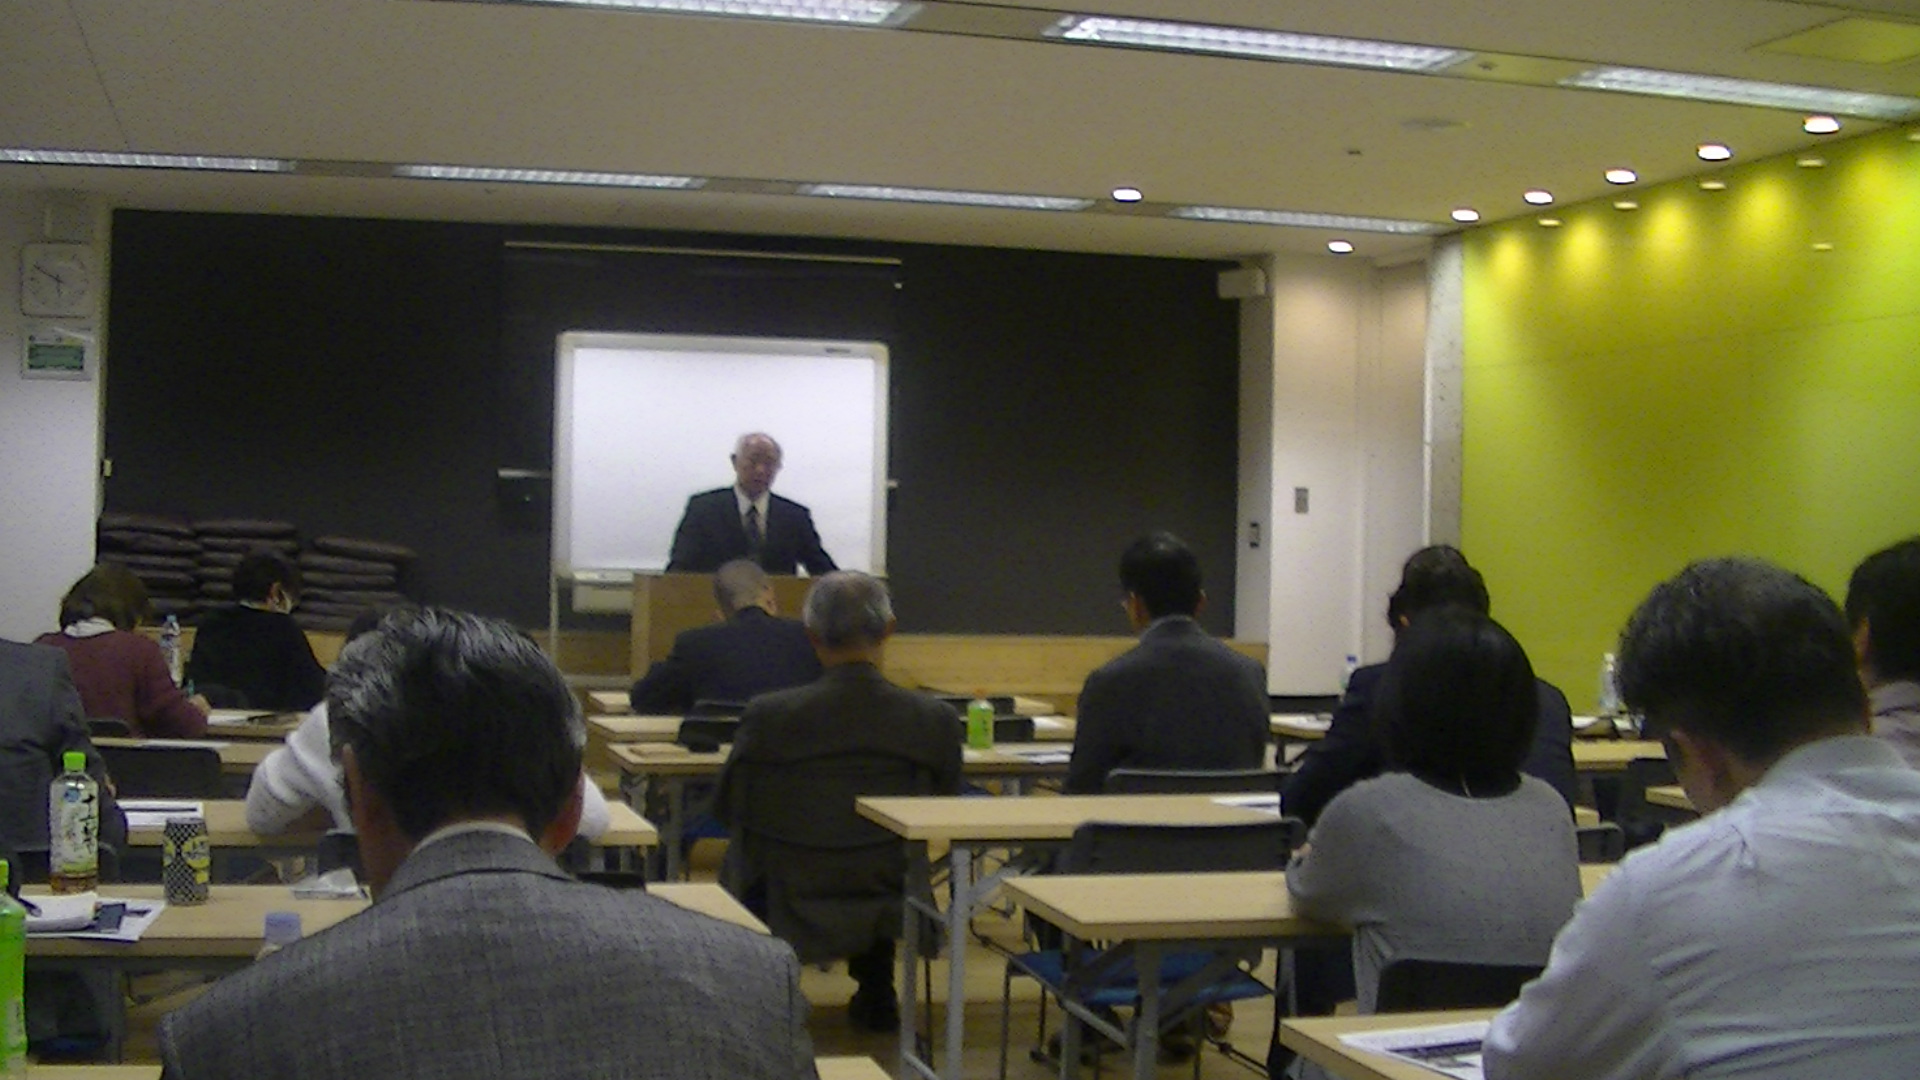 PIC 0094 - 平成30年度 東京思風塾2月3日開催しました。